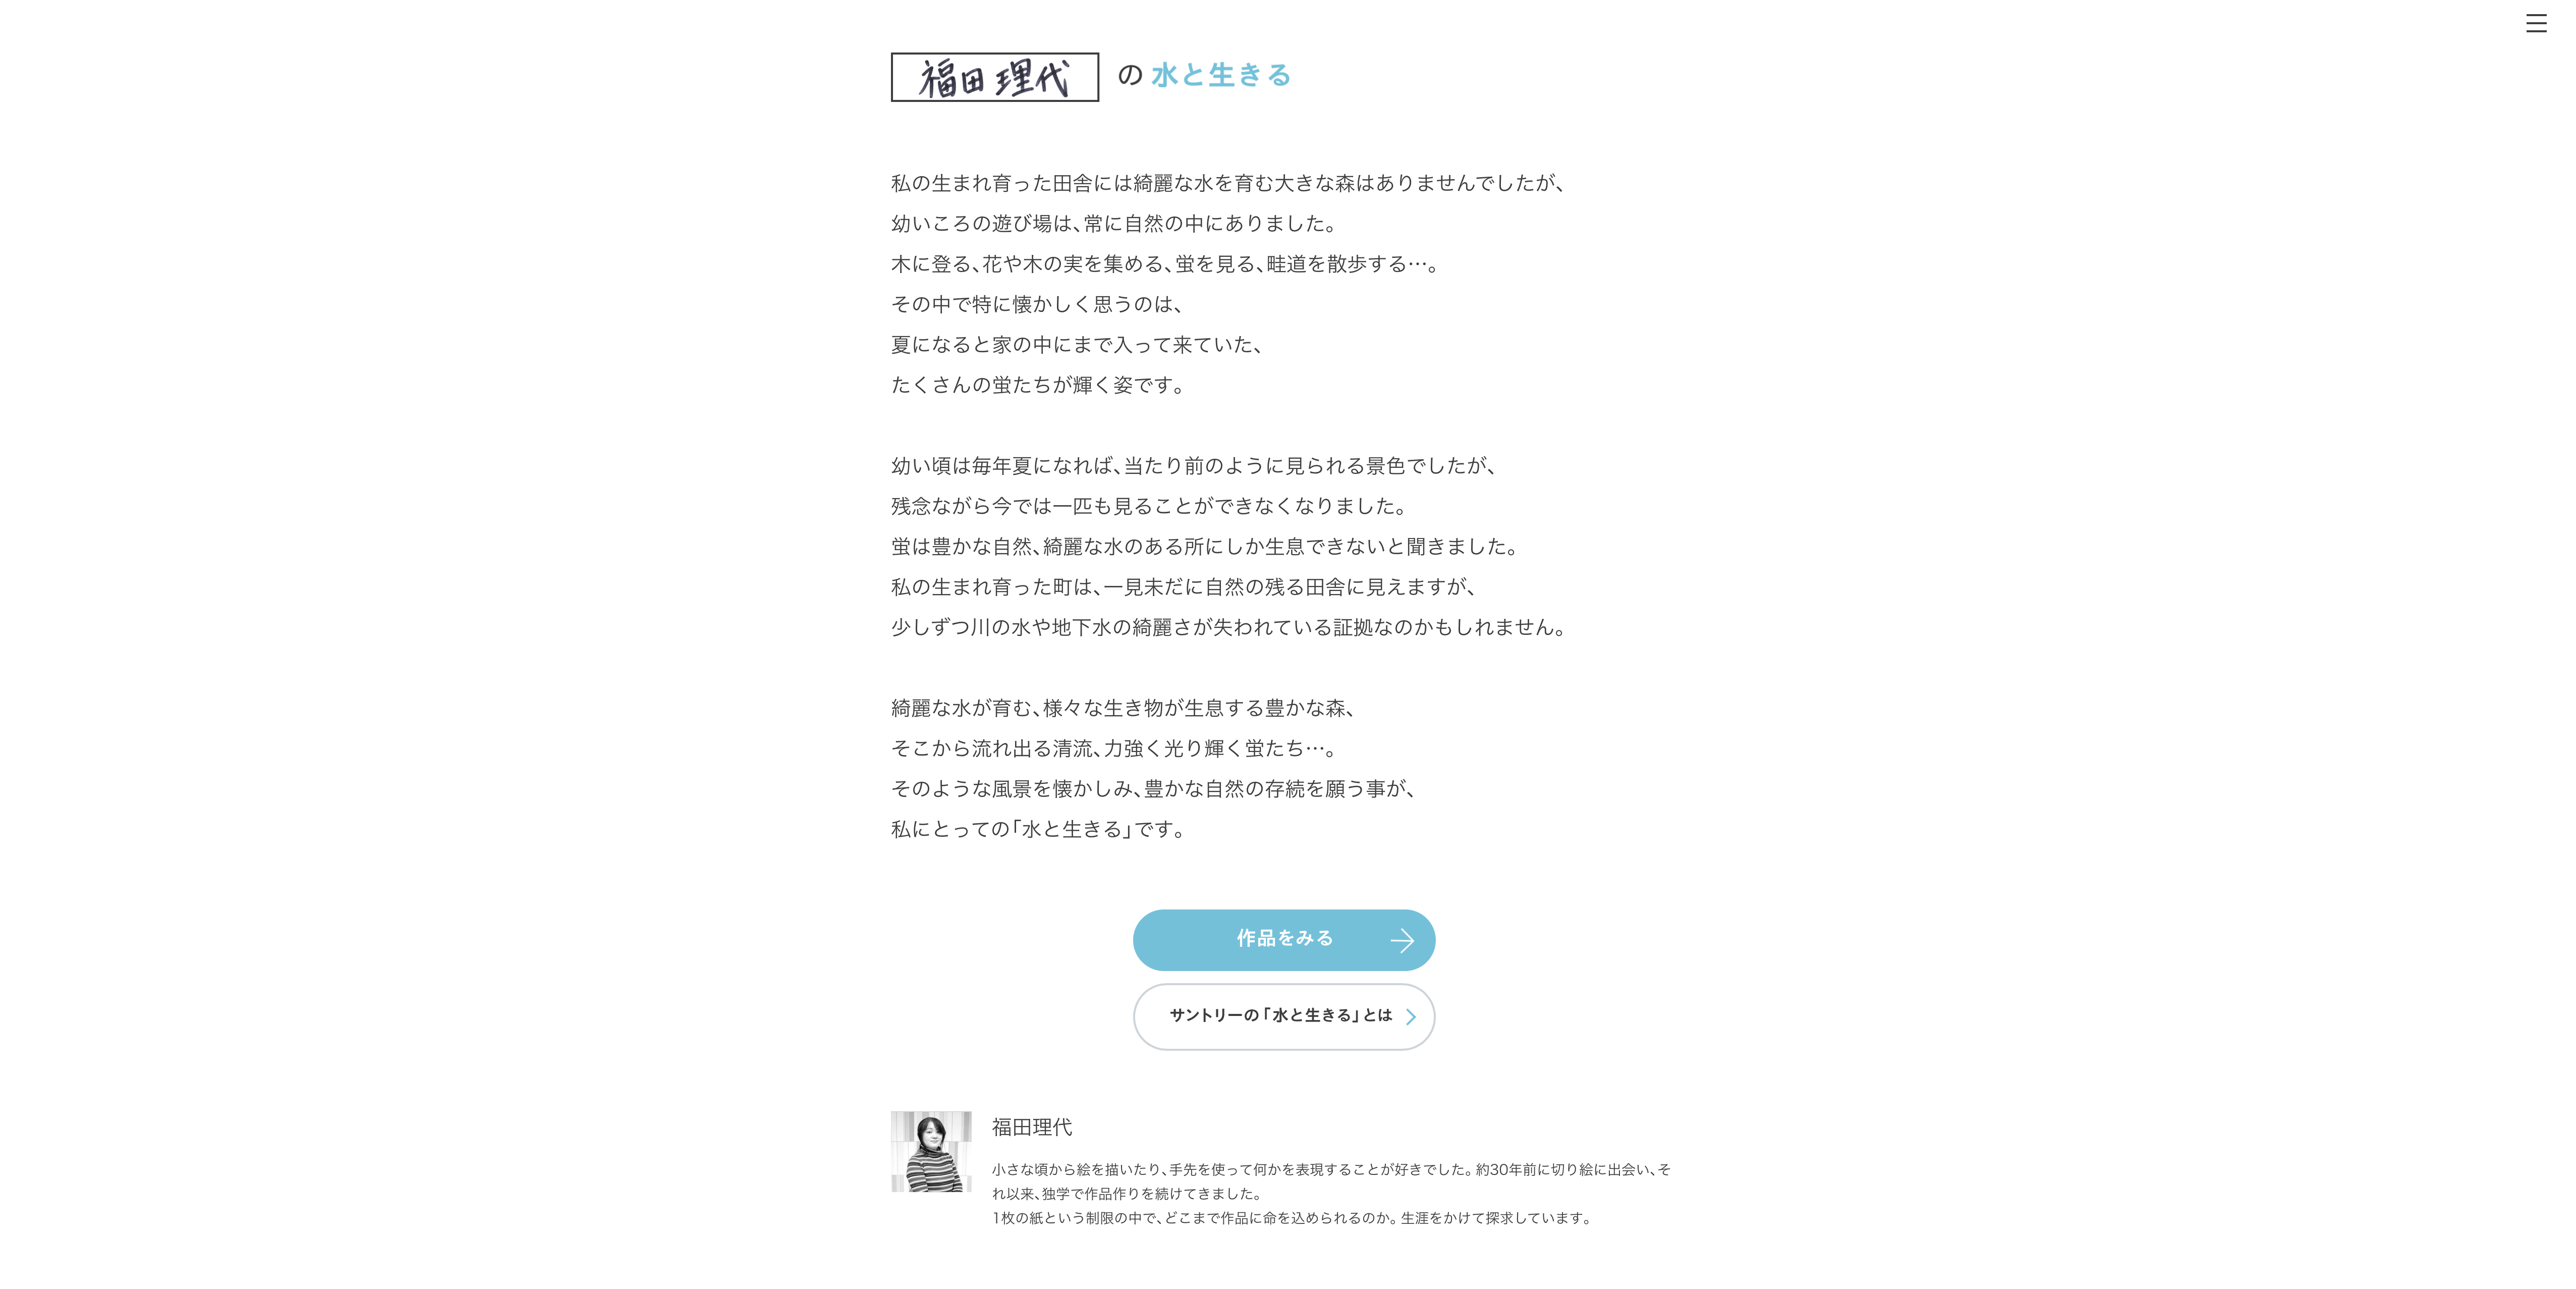 公式 サントリー 水と生きる デジタルミュージアム テーマ作品制作しました Official Suntry Living With Water Digital Museum Theme Production Kiriken Masayo